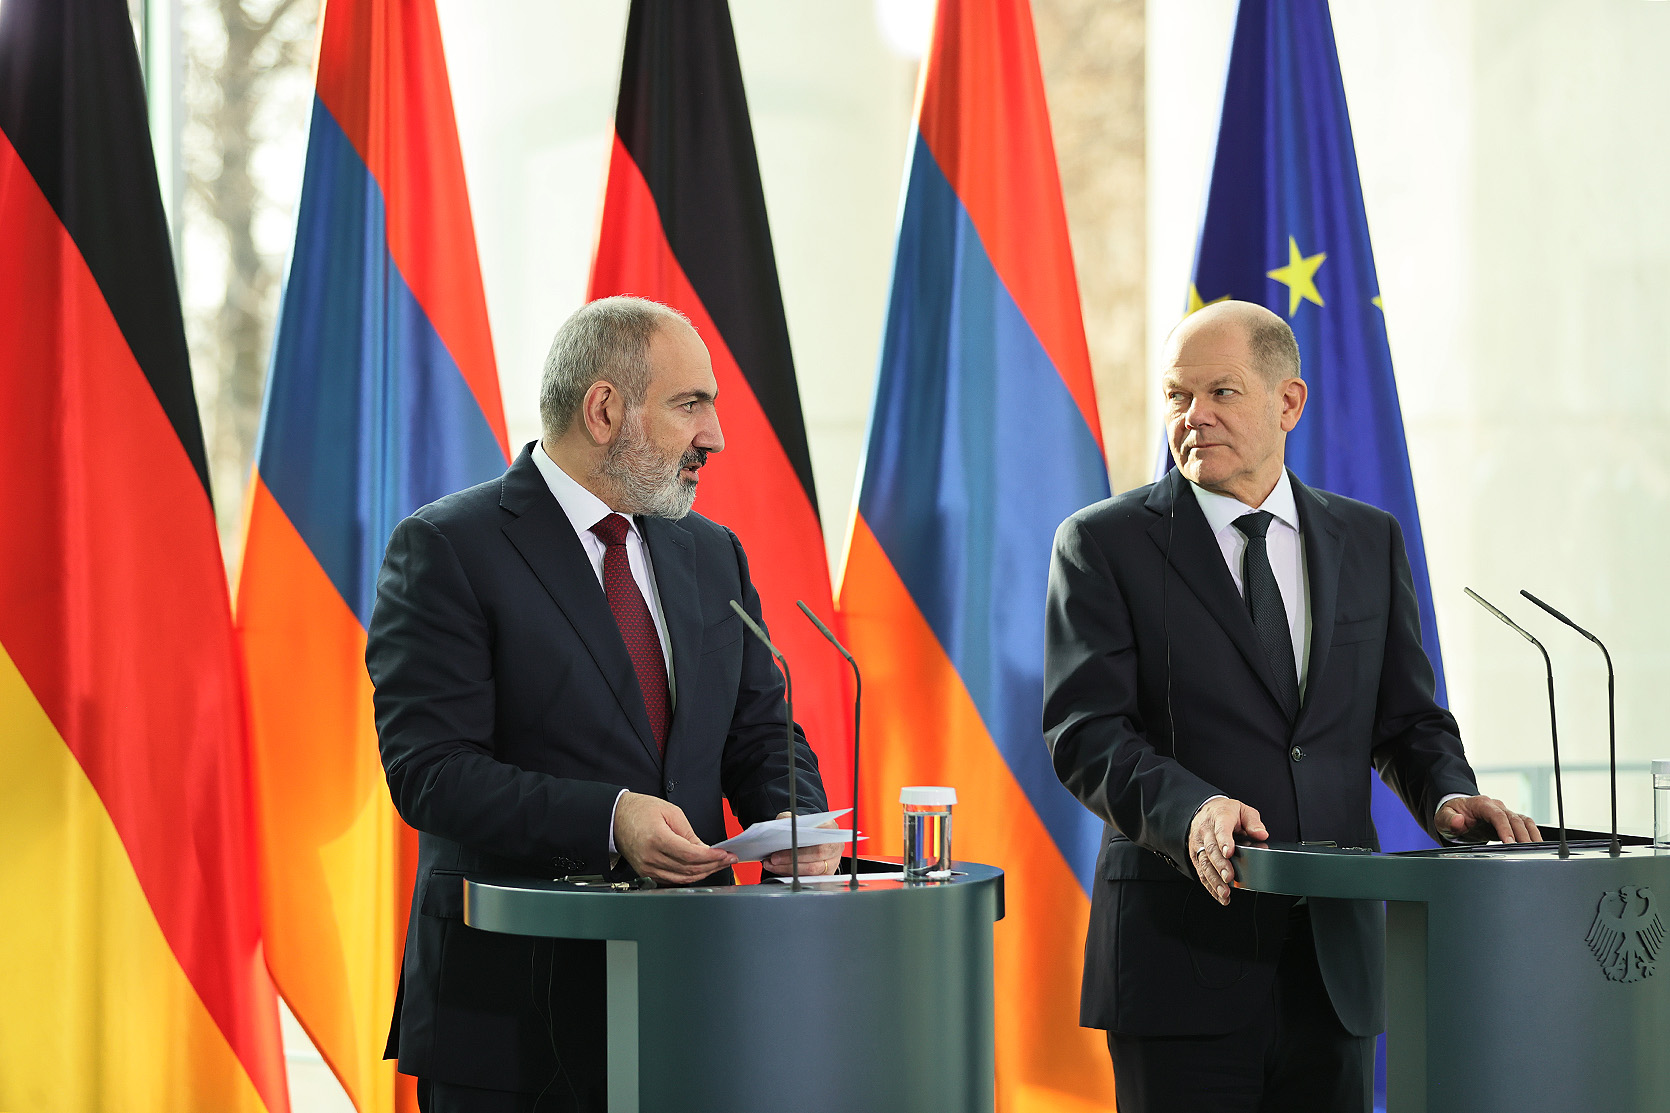 Планируется подписать соглашение, регулирующее присутствие миссии ЕС в Армении - Пашинян 